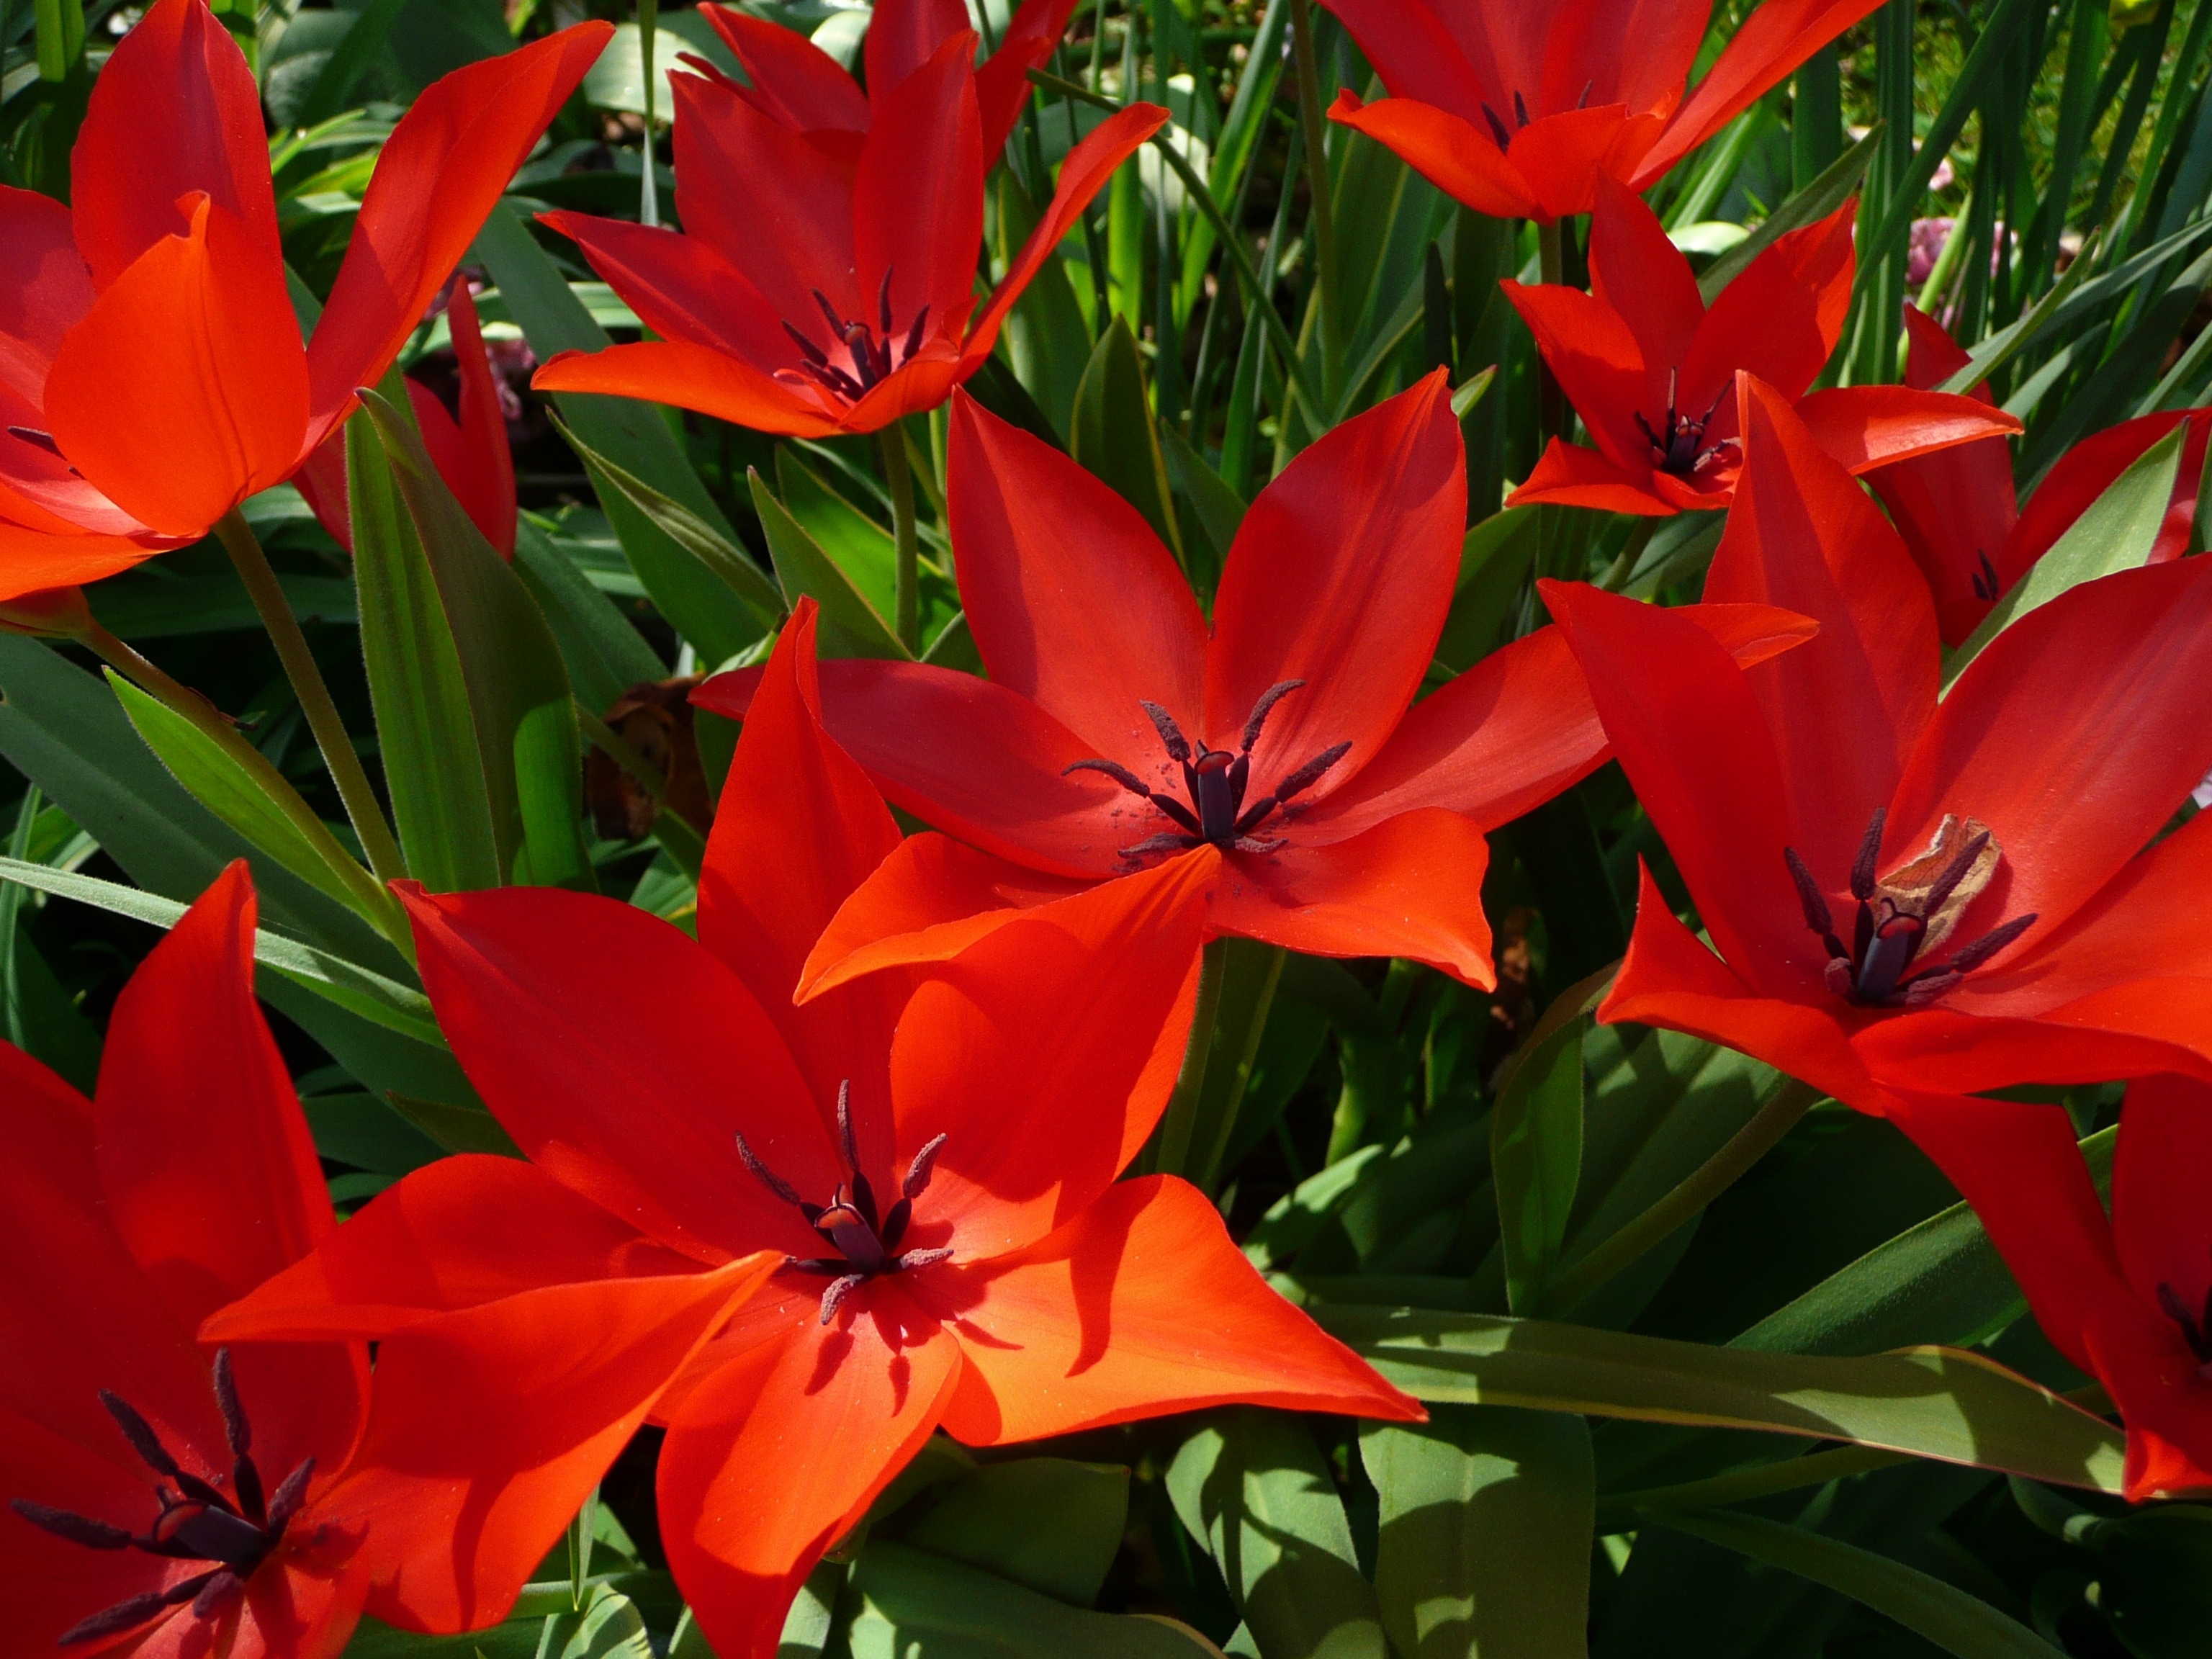 red poinsettia flower